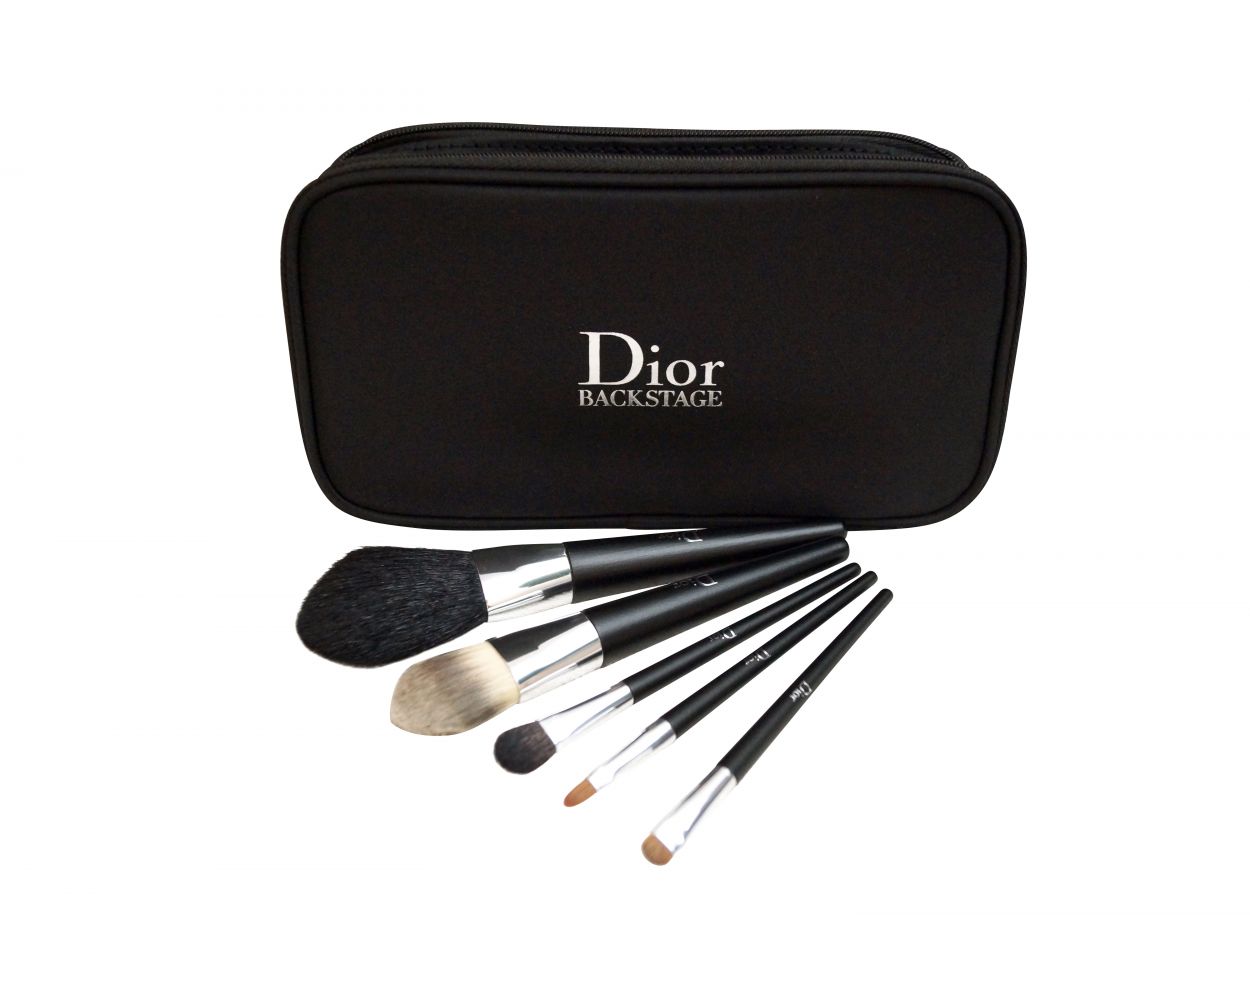 christian dior makeup brush set